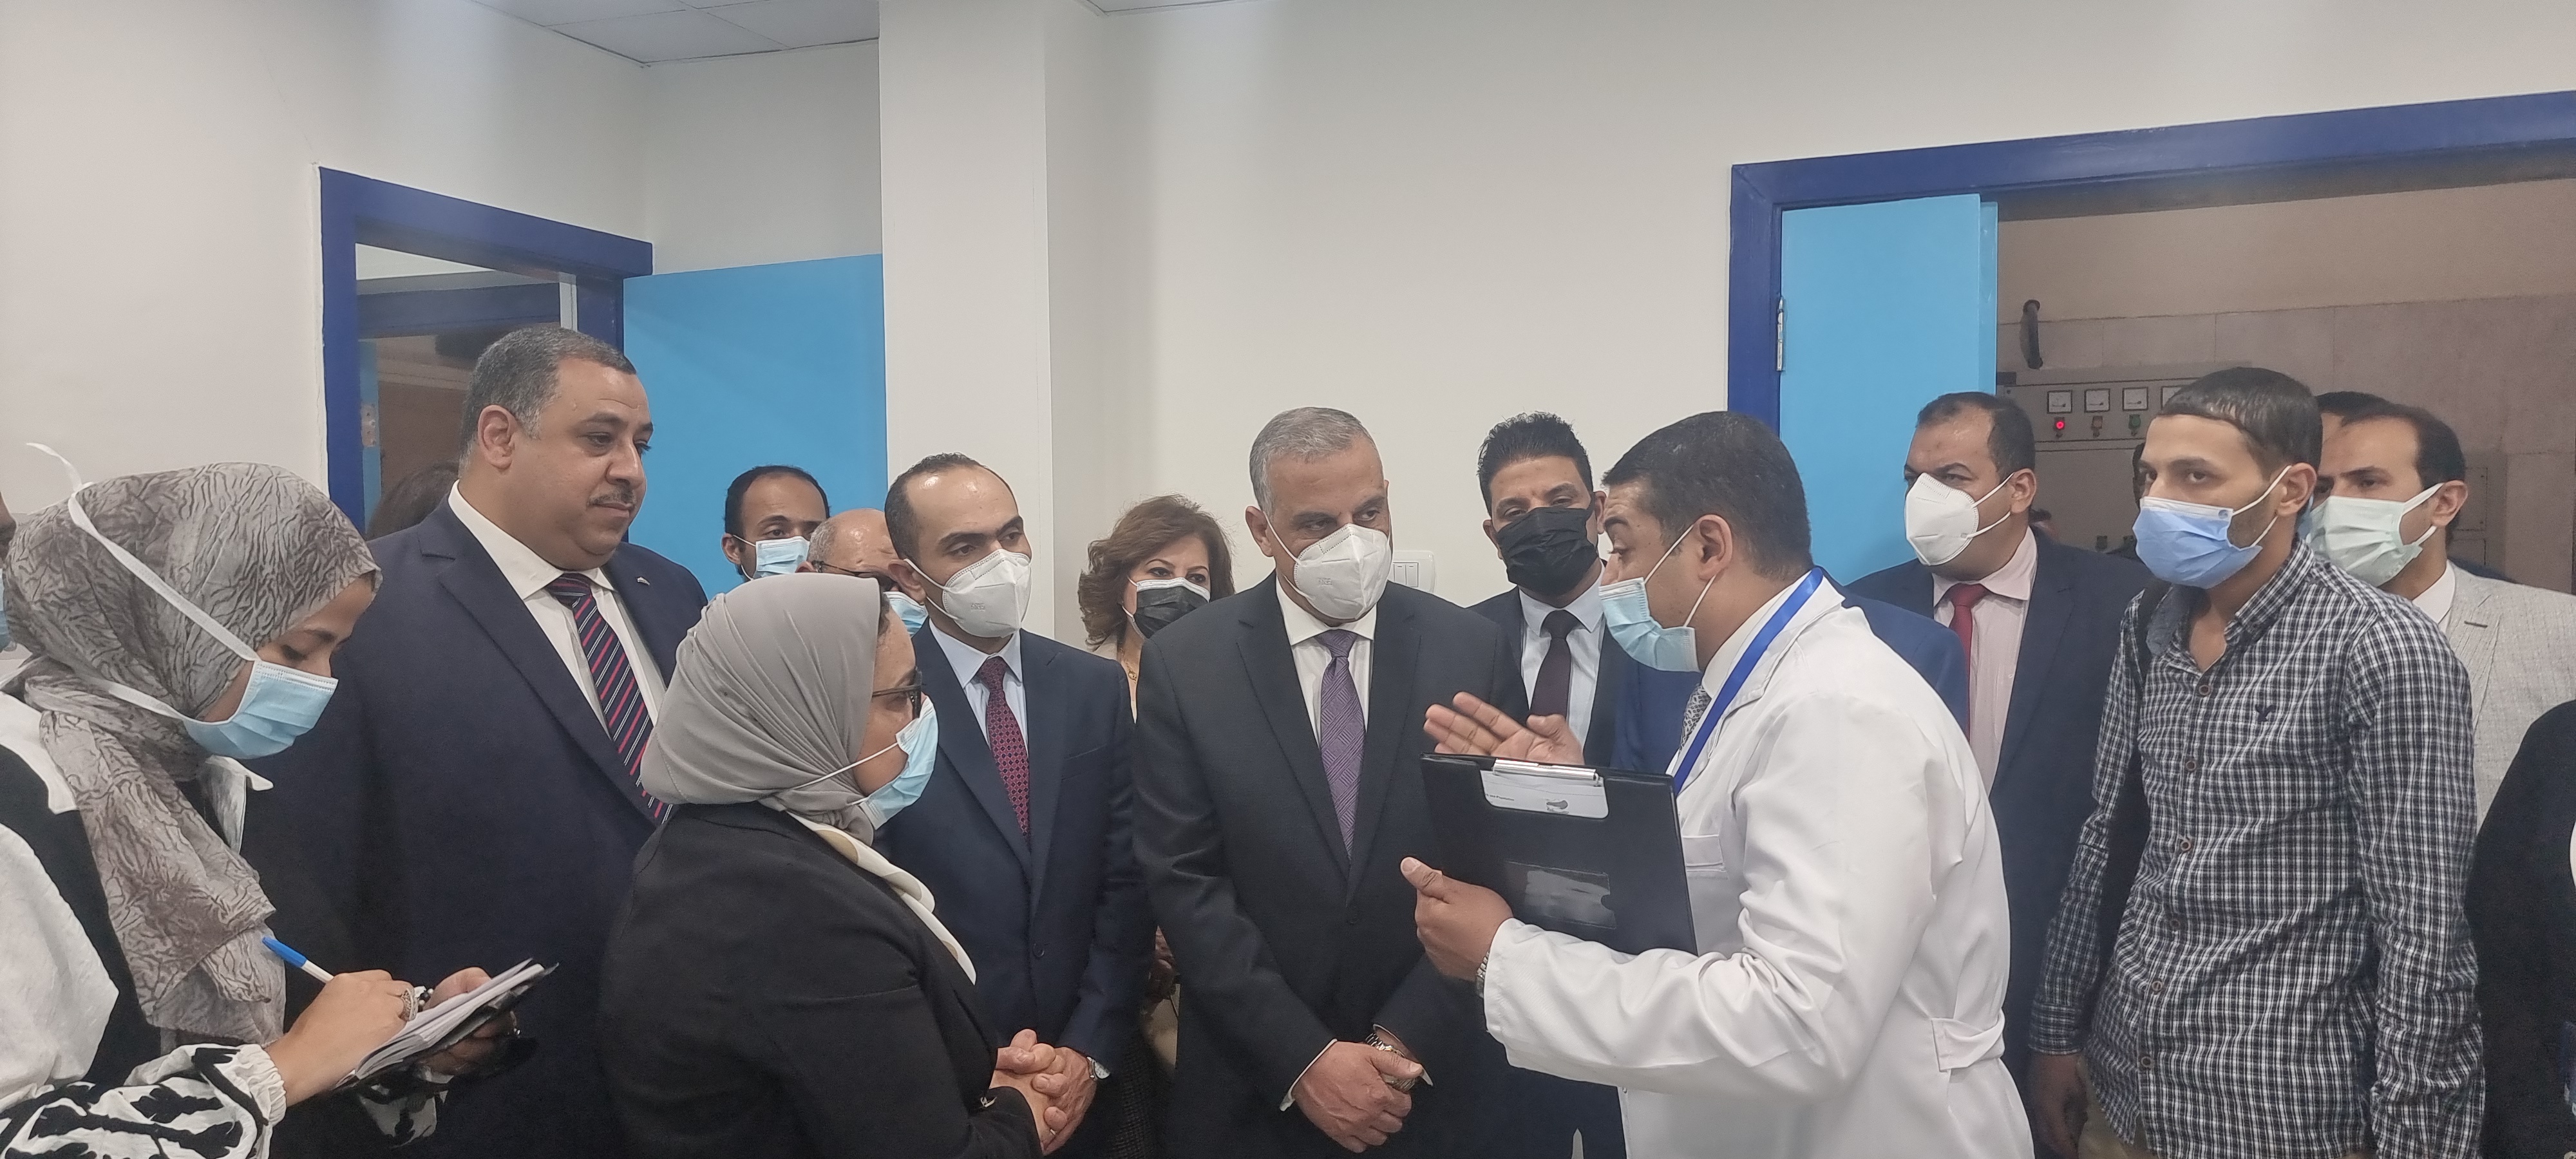 Le gouverneur de Sohag a inauguré une nouvelle unité de radiologie à l'hôpital Fever (6)